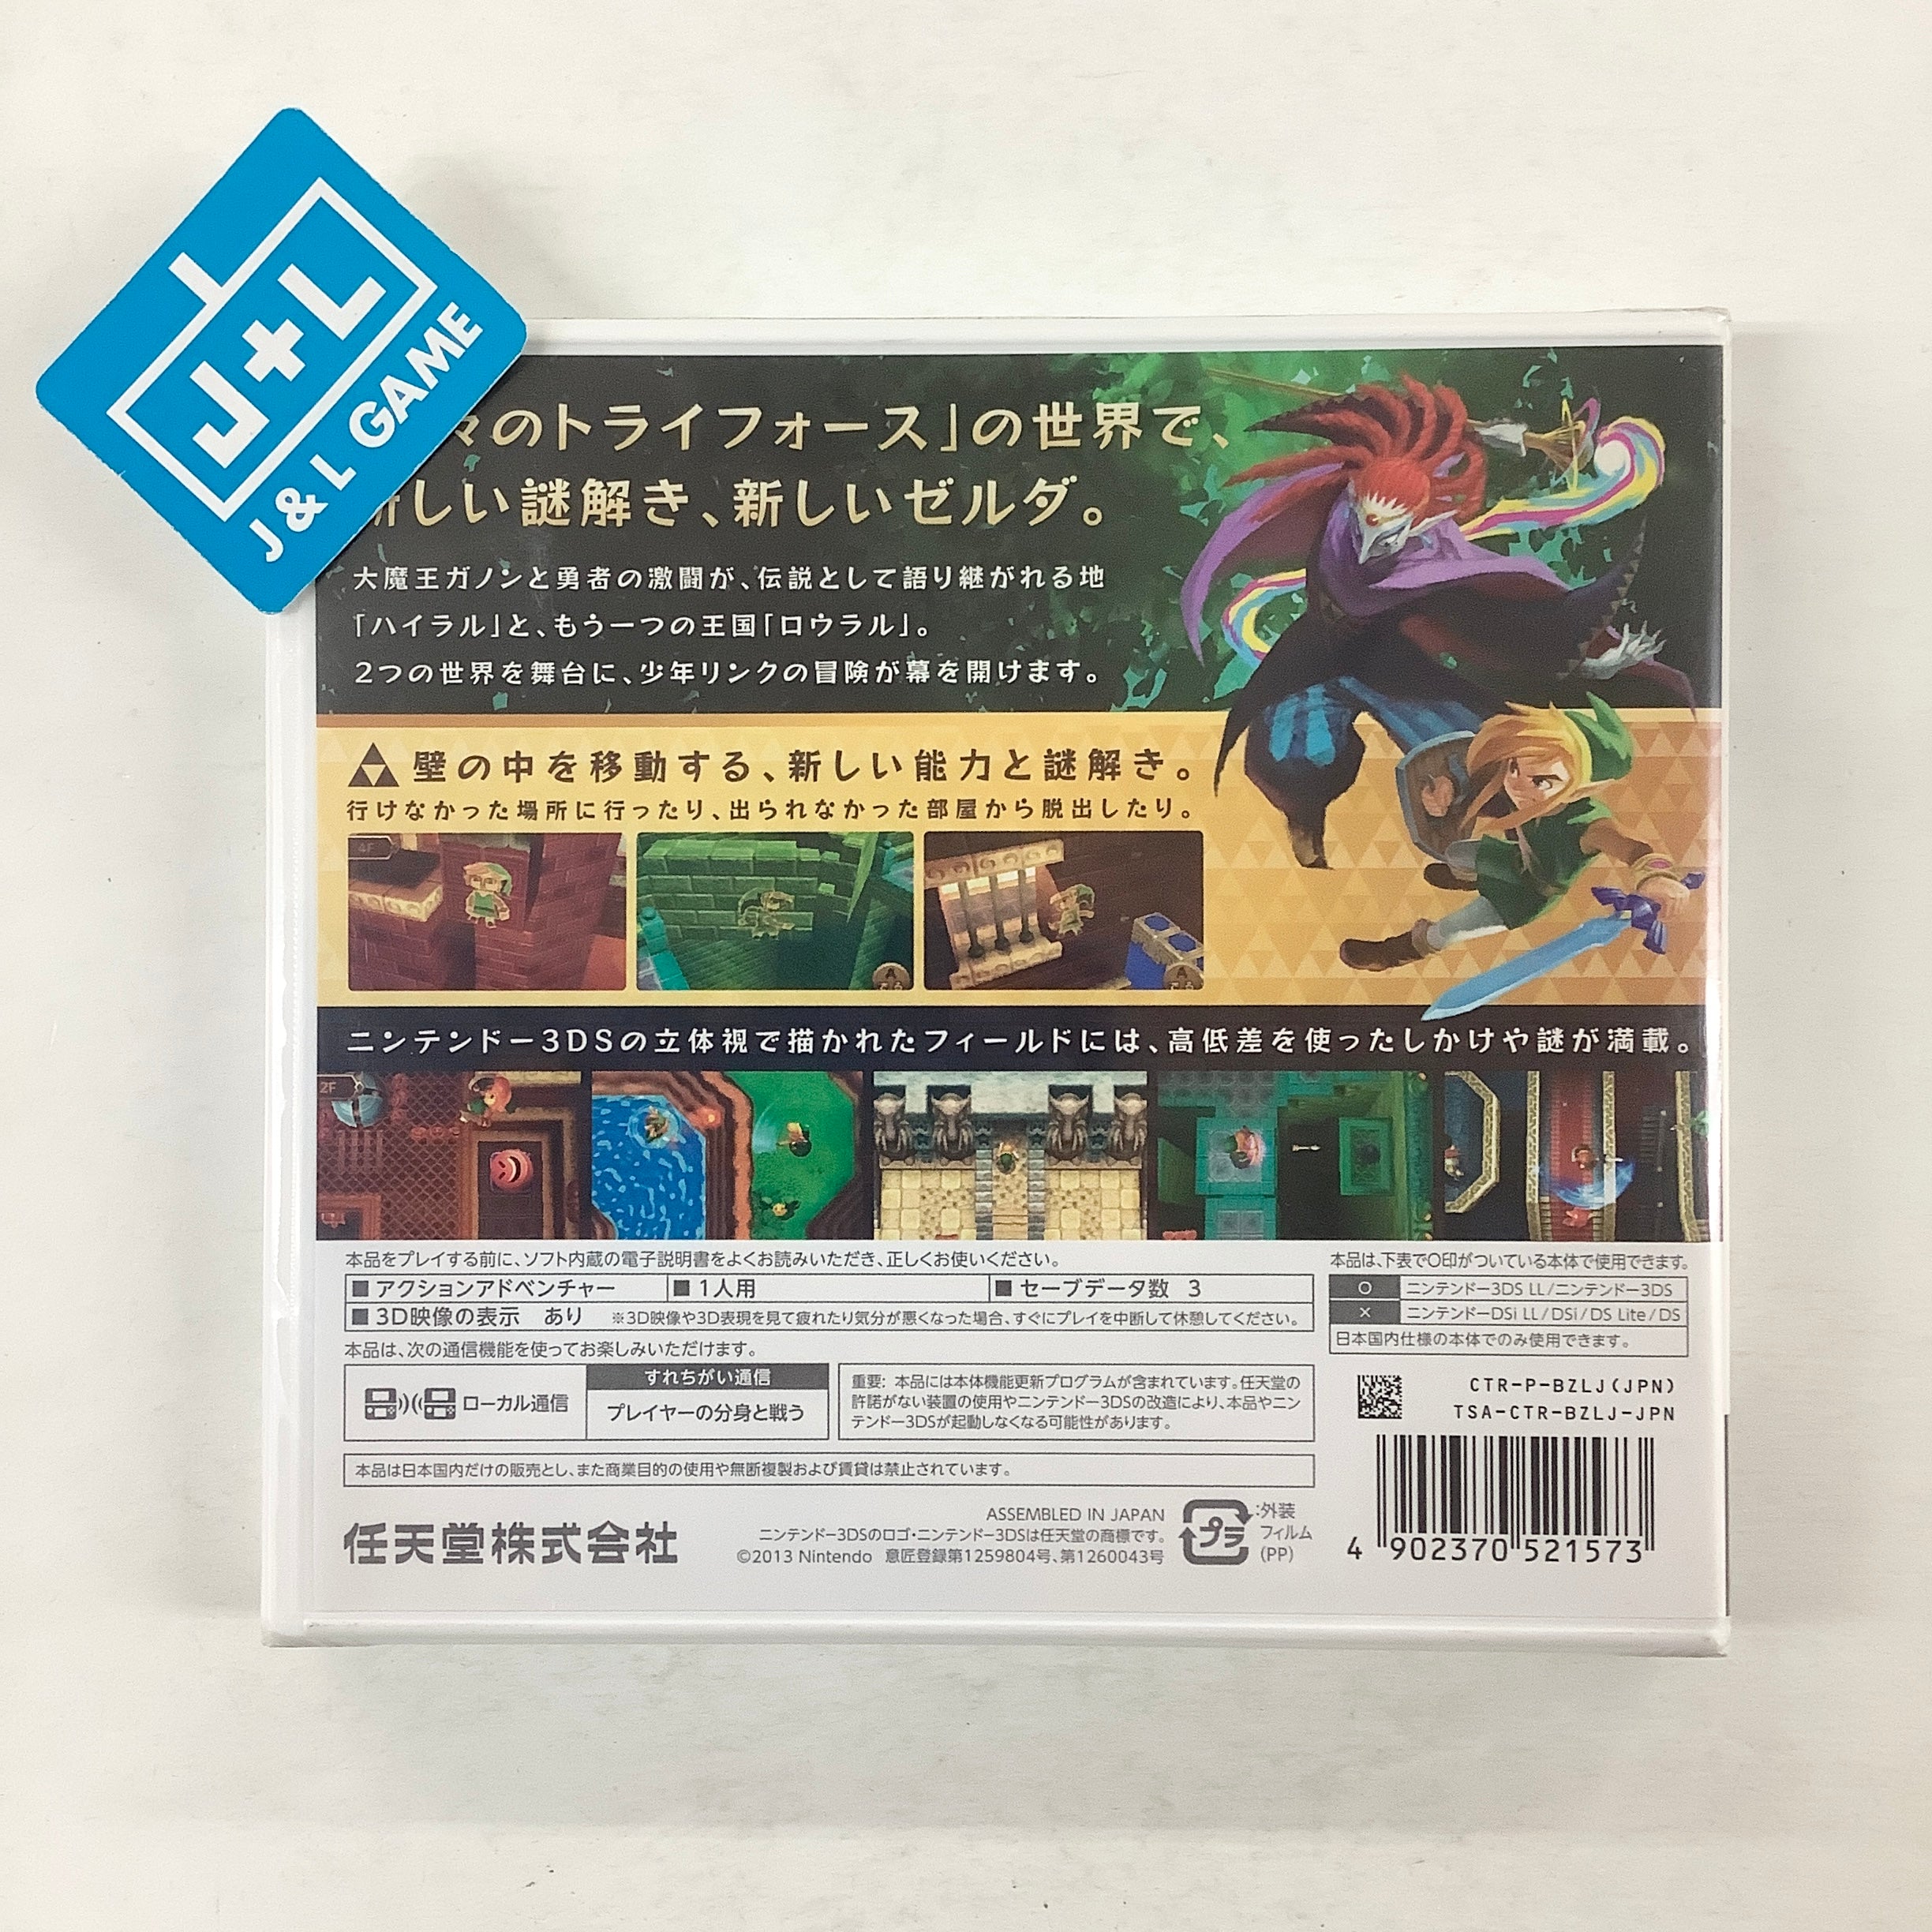 Zelda no Densetsu: Kamigami no Triforce 2 - Nintendo 3DS (Japanese Import) Video Games Nintendo   